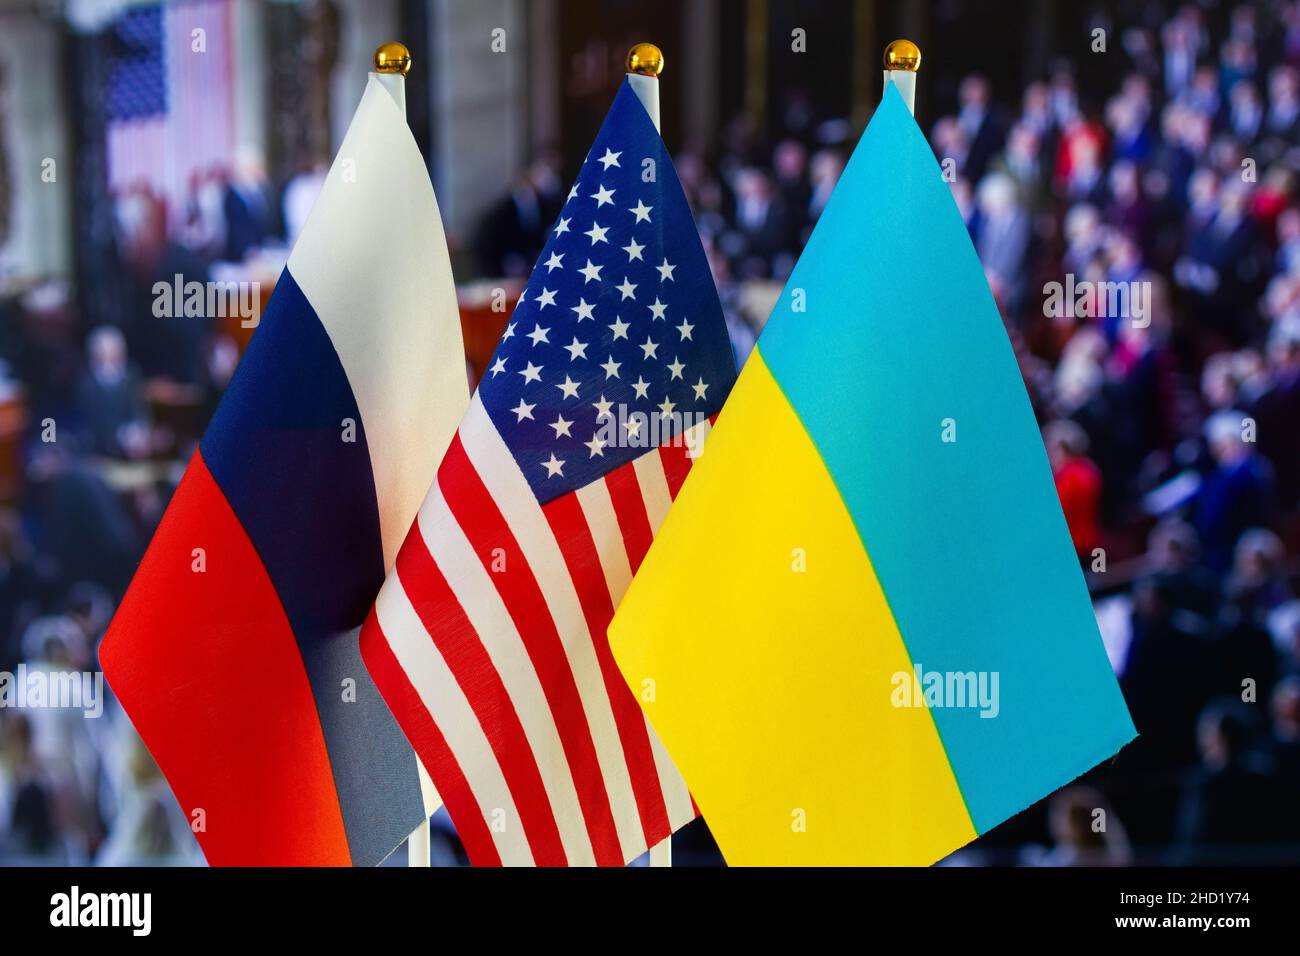 Die US-Flagge, die russische Flagge, die ukrainische Flagge. Flagge der USA, Flagge Russlands, Flagge der Ukraine. Die Vereinigten Staaten von Amerika und die Russische Föderation konfron Stockfoto